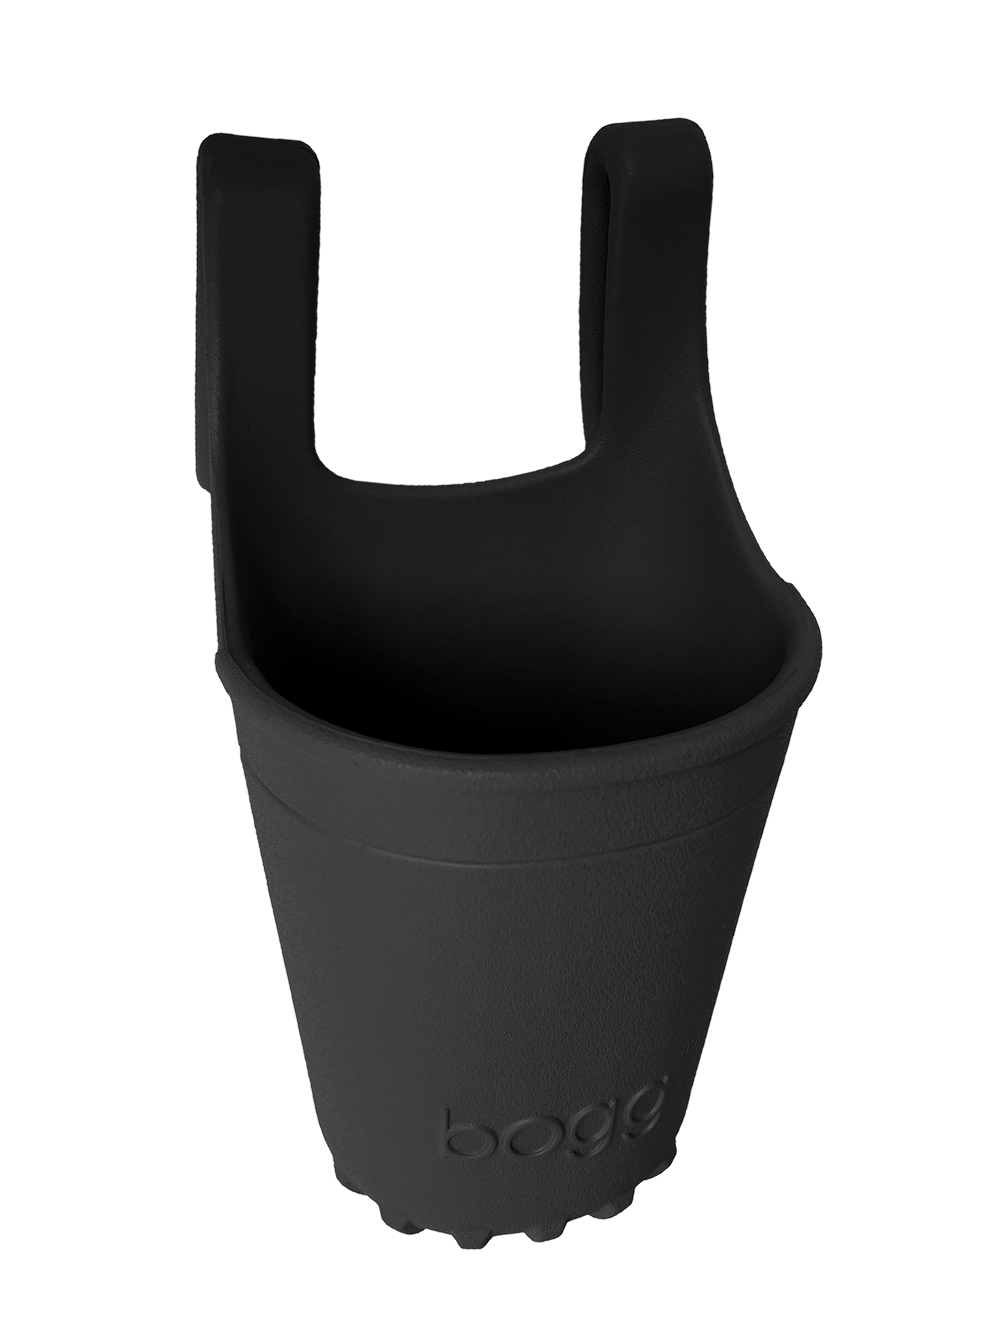 LBD BLACK Bogg® Bevy Drink Holder - Image 1 - Bogg® Bag